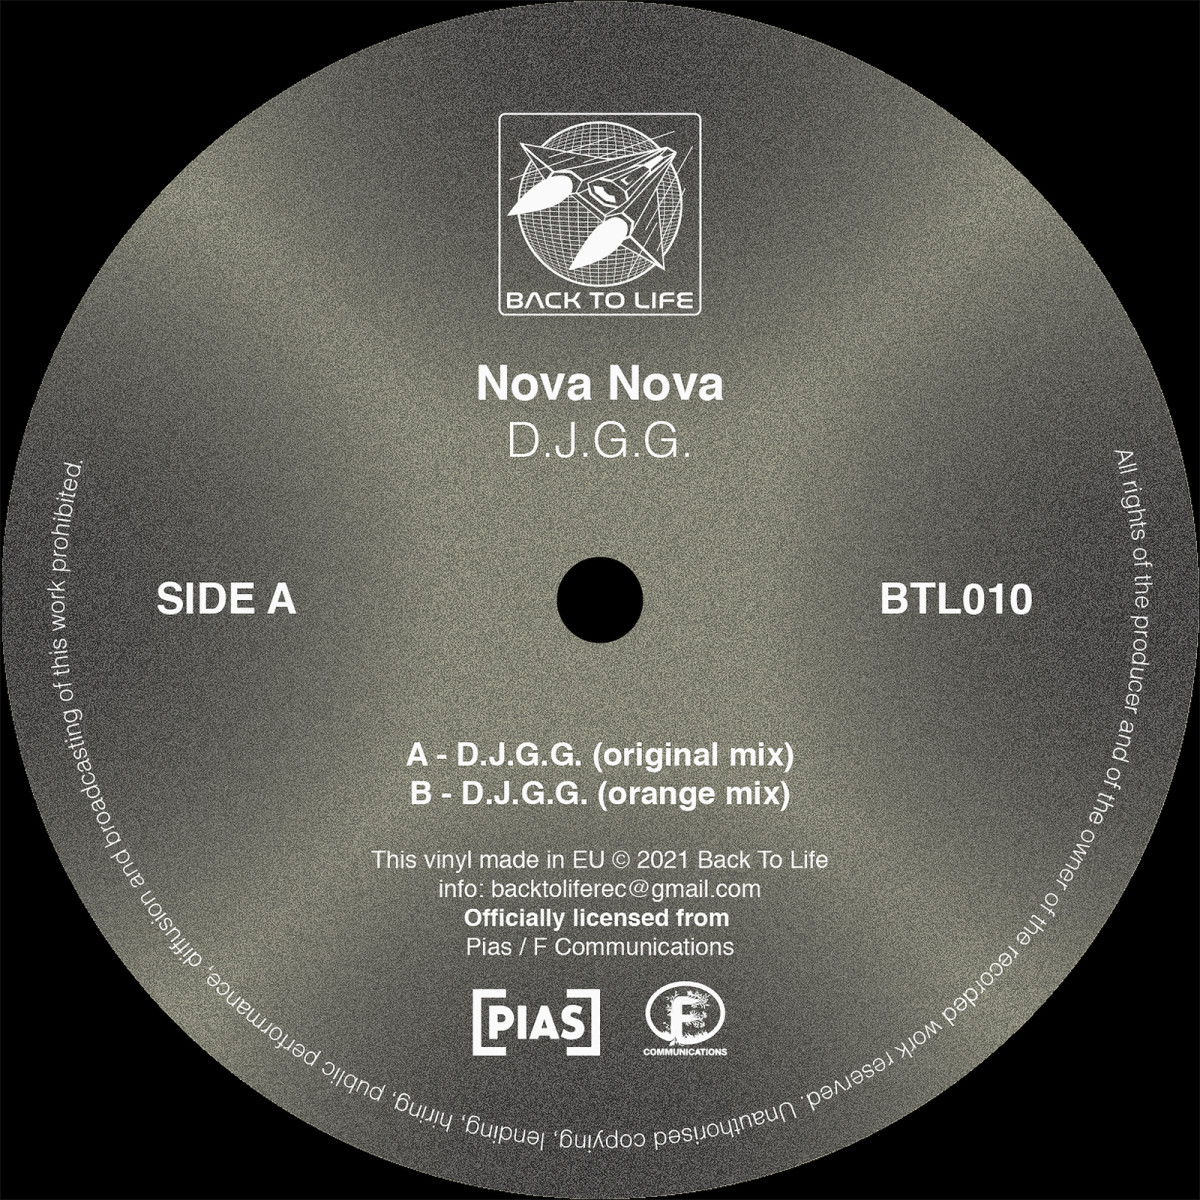 Nova Nova - D.J.G.G. - BTL010 - BACK TO LIFE